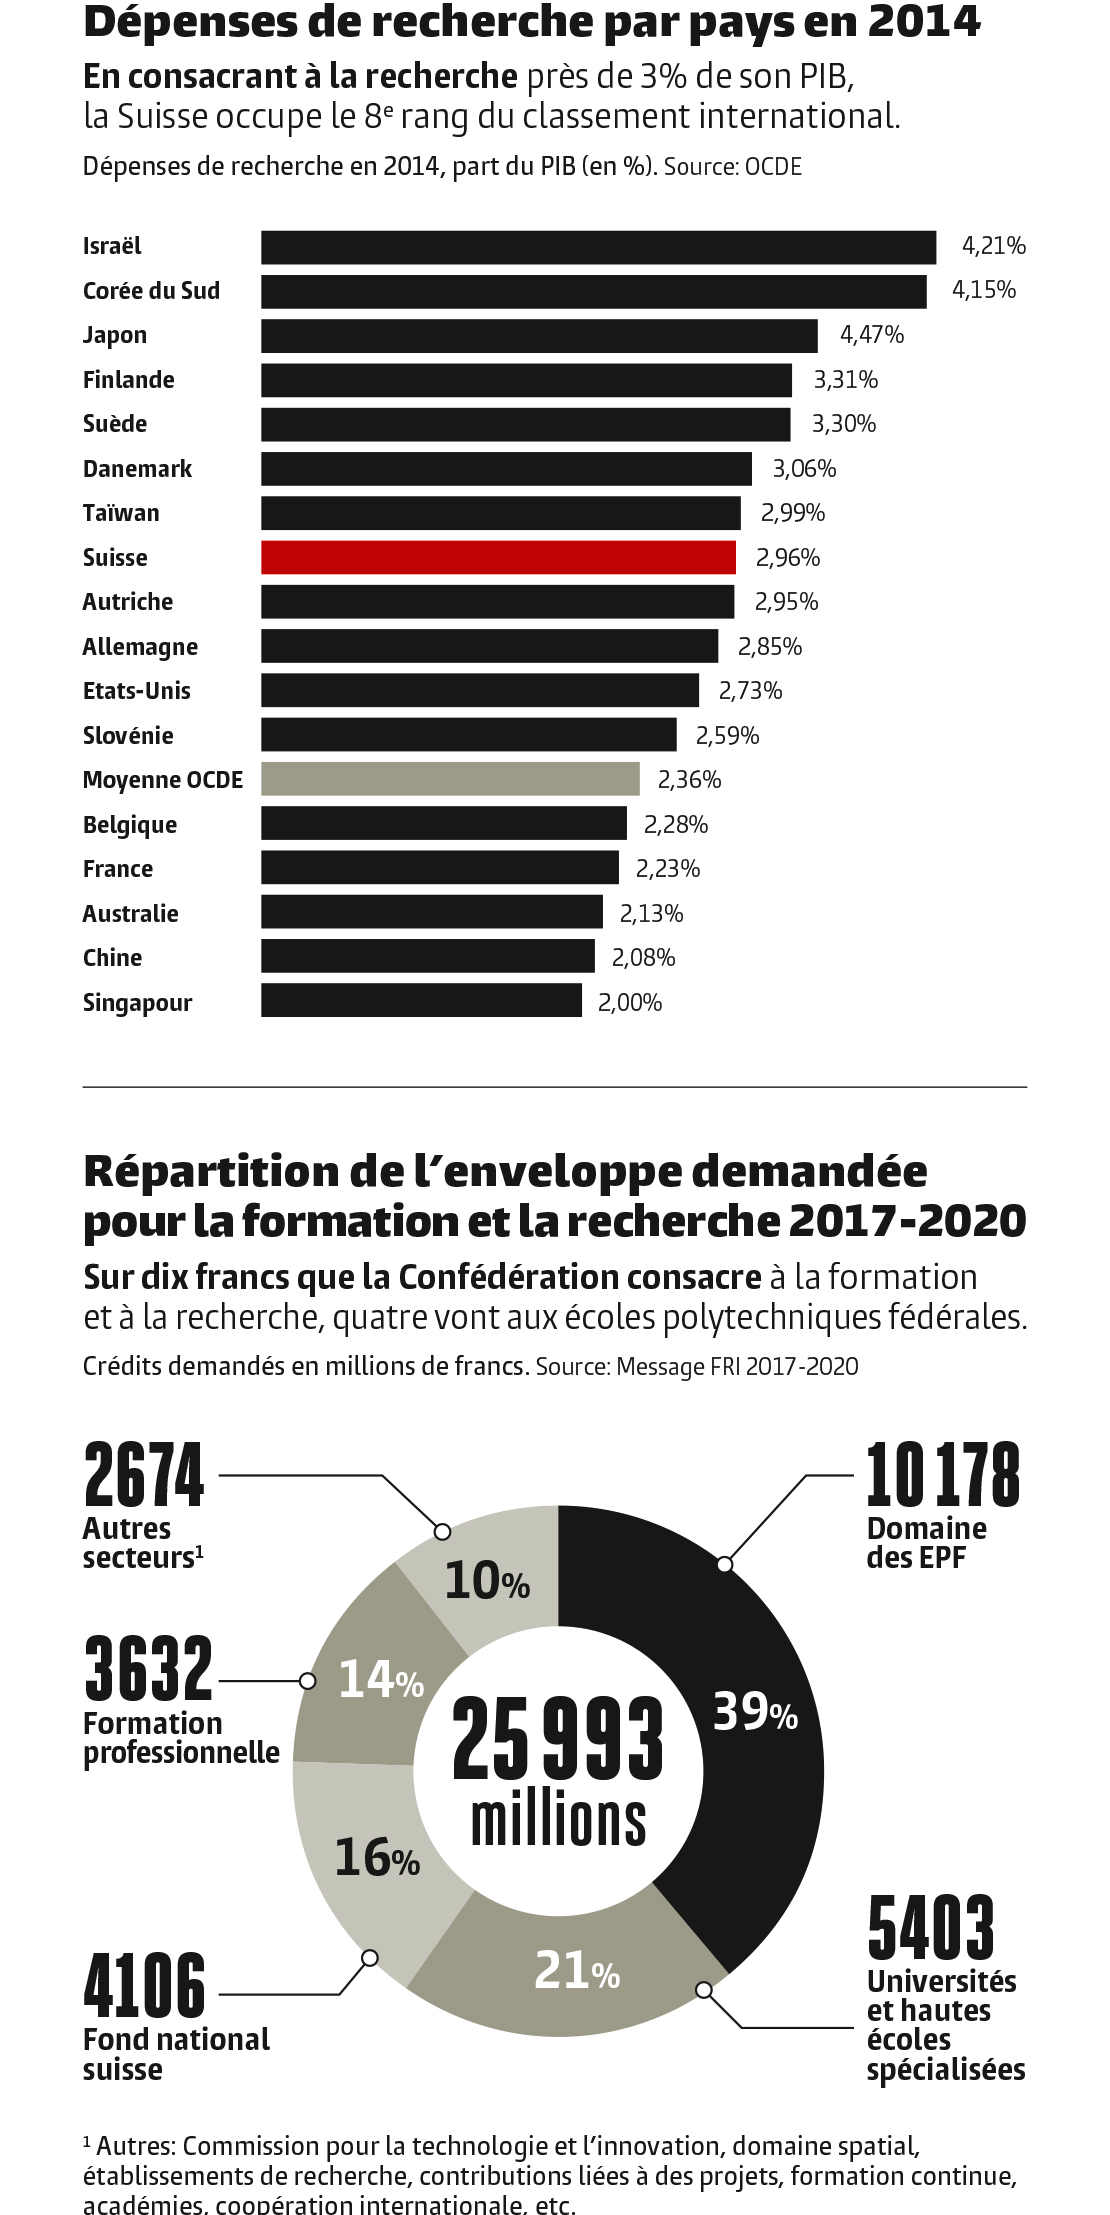 Infographie. Dépenses de recherche par pays en 2014